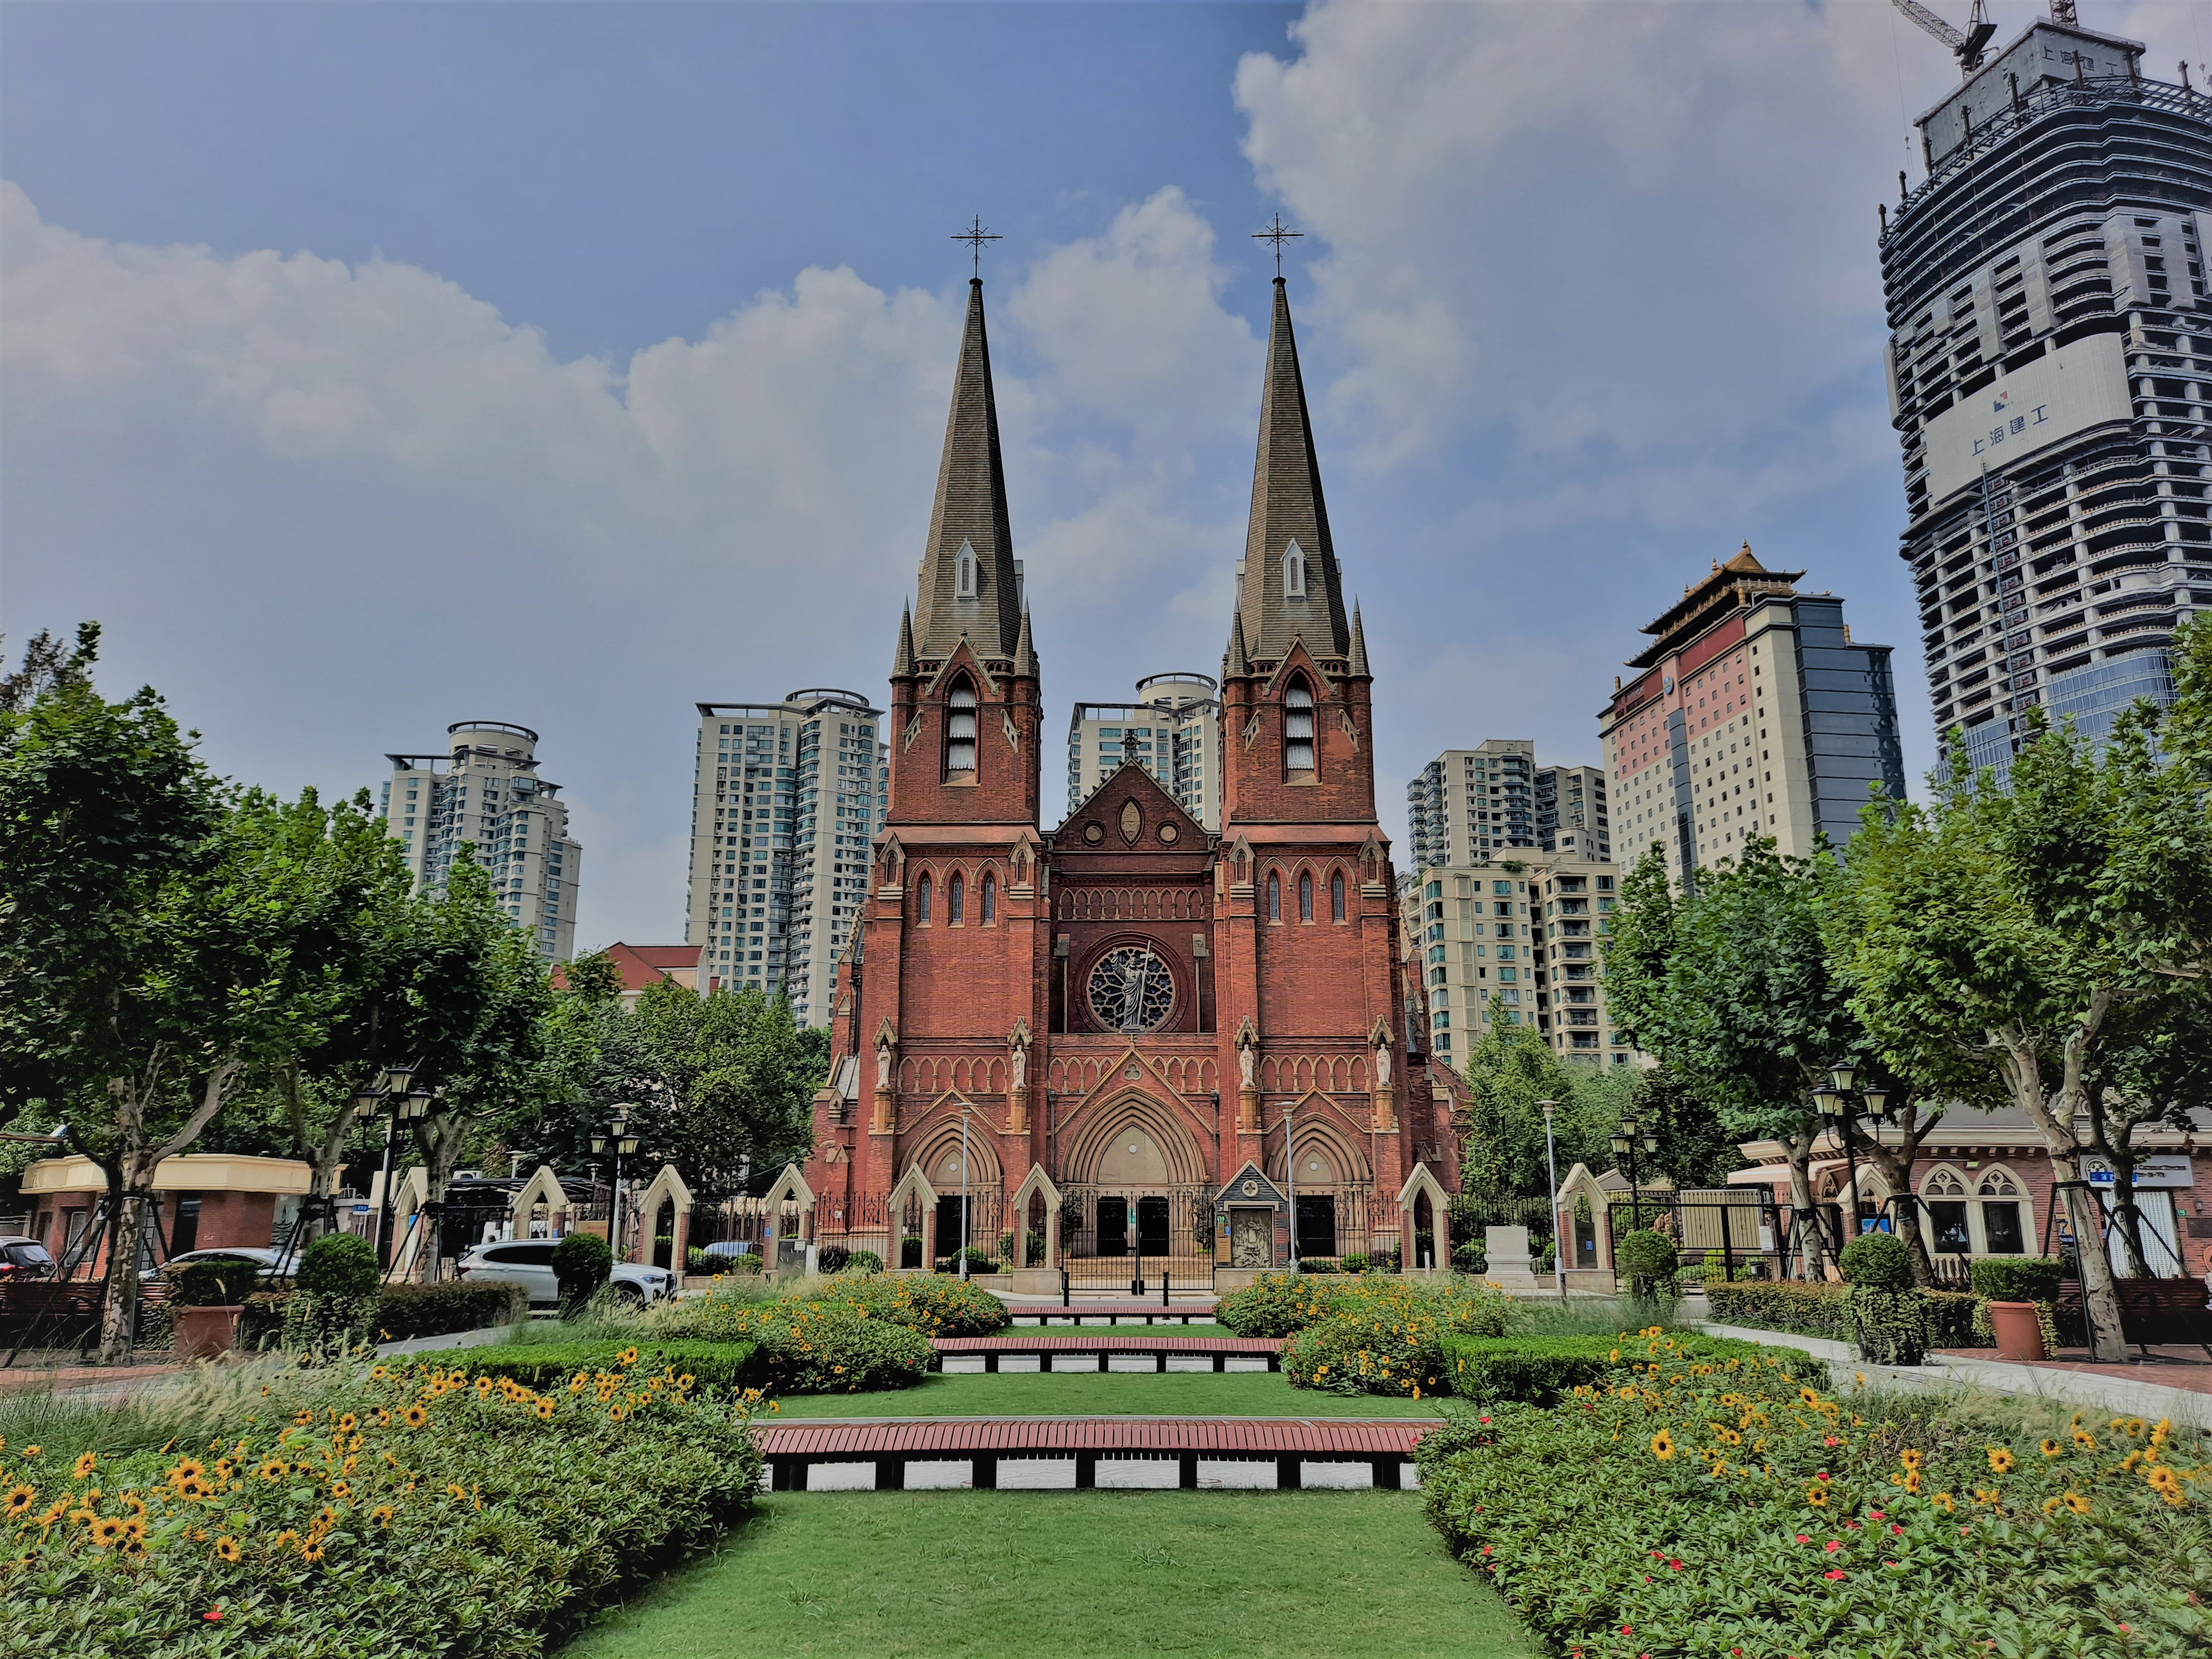 Katedrala sv. Ignacija u Šangaju, Šangaj, Kina